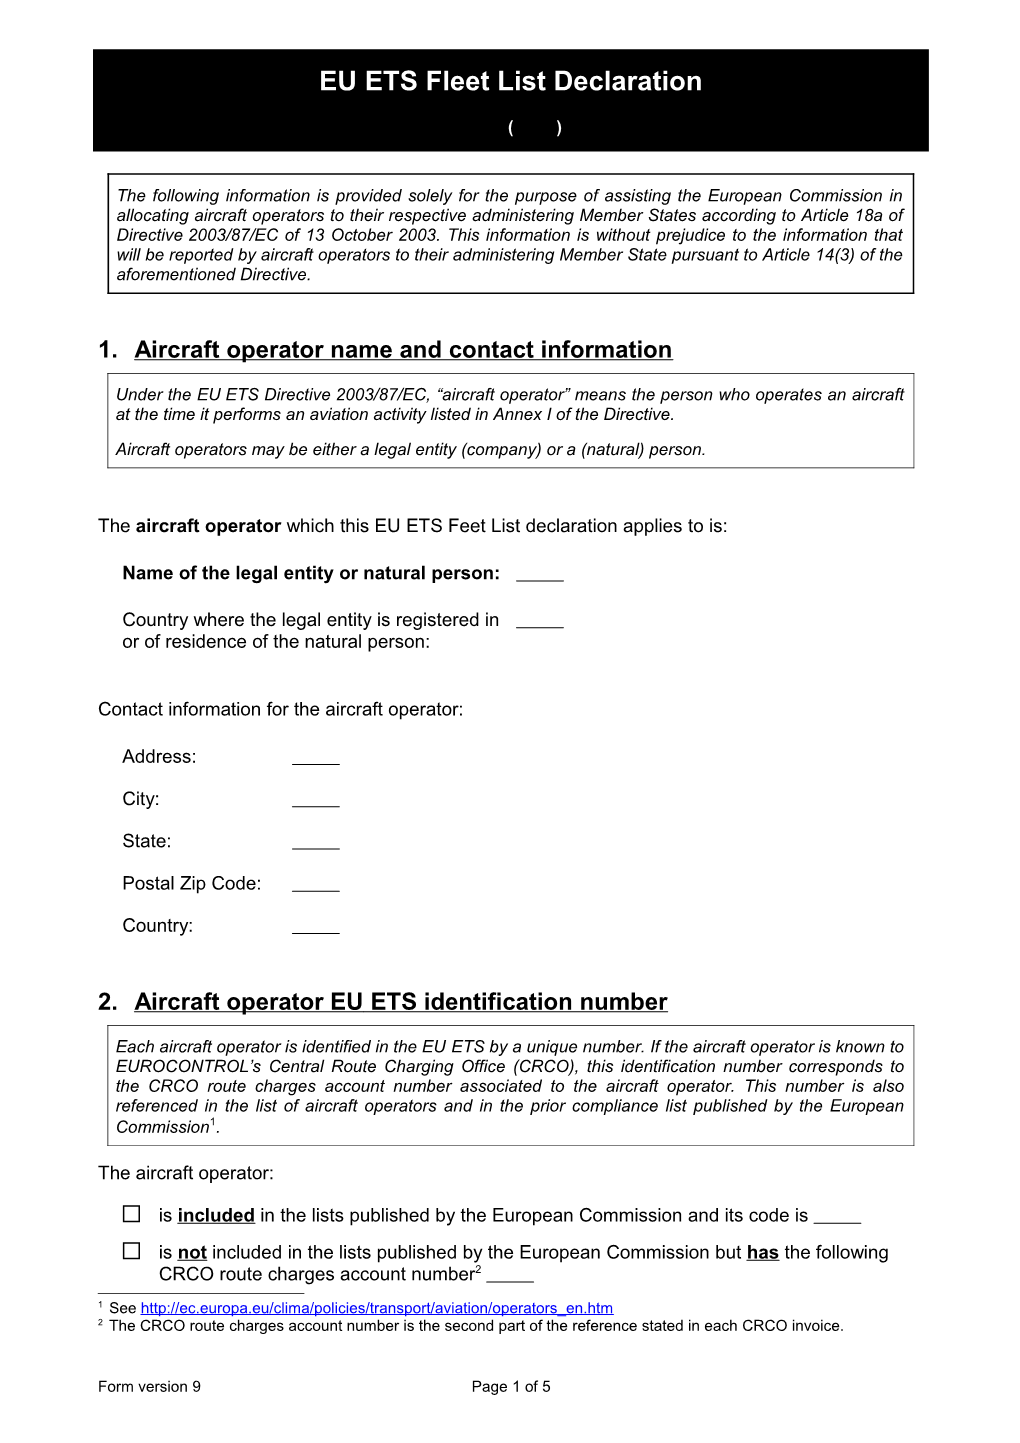 EU ETS Fleet List Declaration (Version 9)